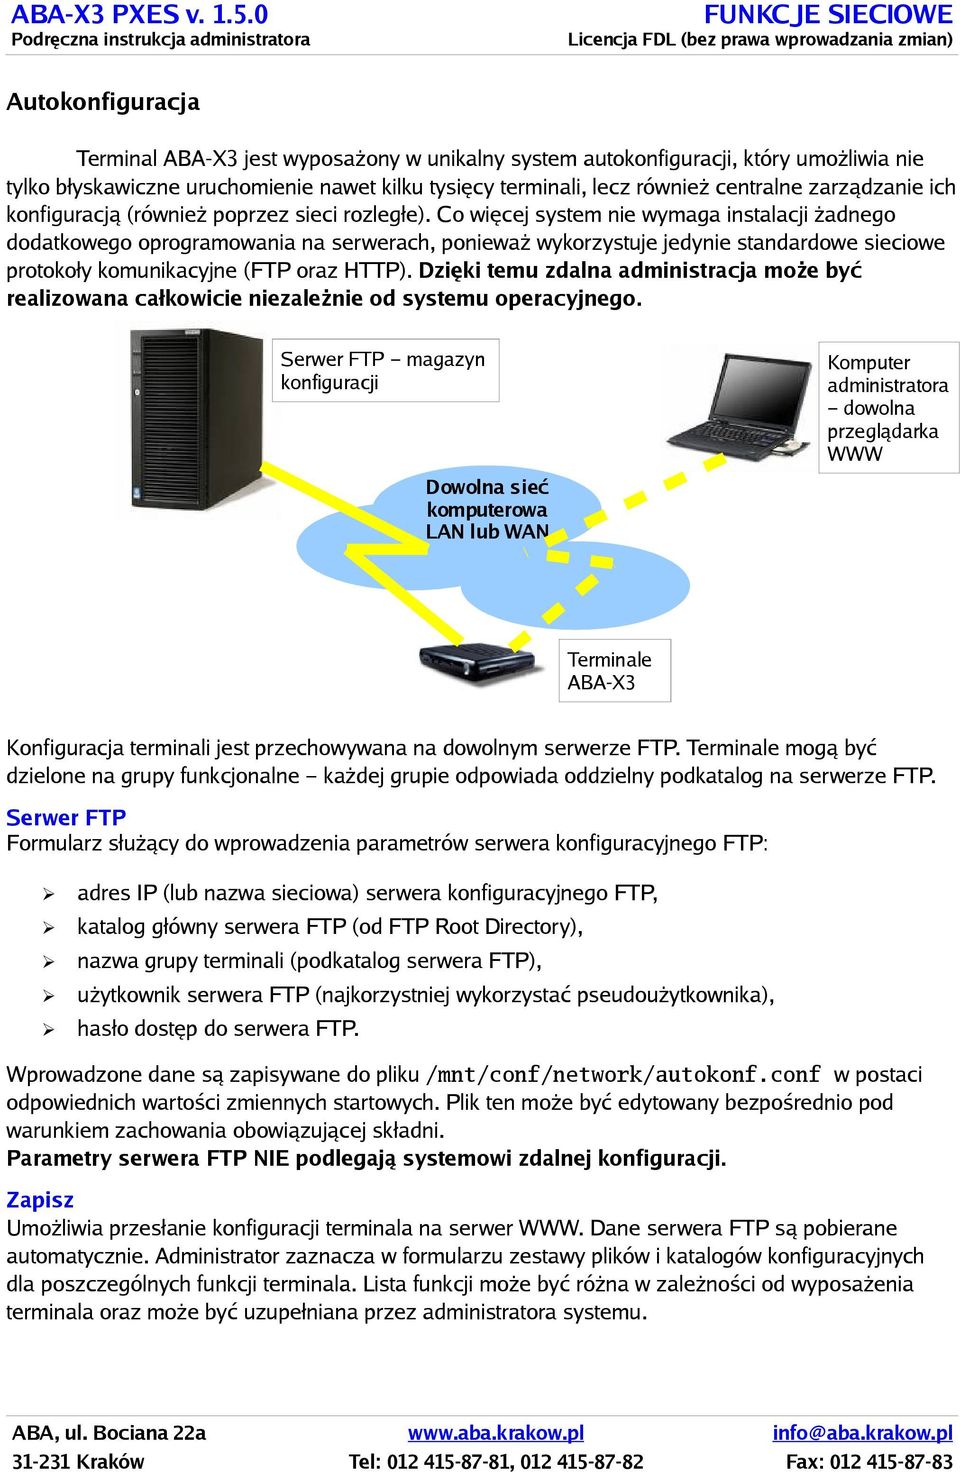 Co więcej system nie wymaga instalacji żadnego dodatkowego oprogramowania na serwerach, ponieważ wykorzystuje jedynie standardowe sieciowe protokoły komunikacyjne (FTP oraz HTTP).